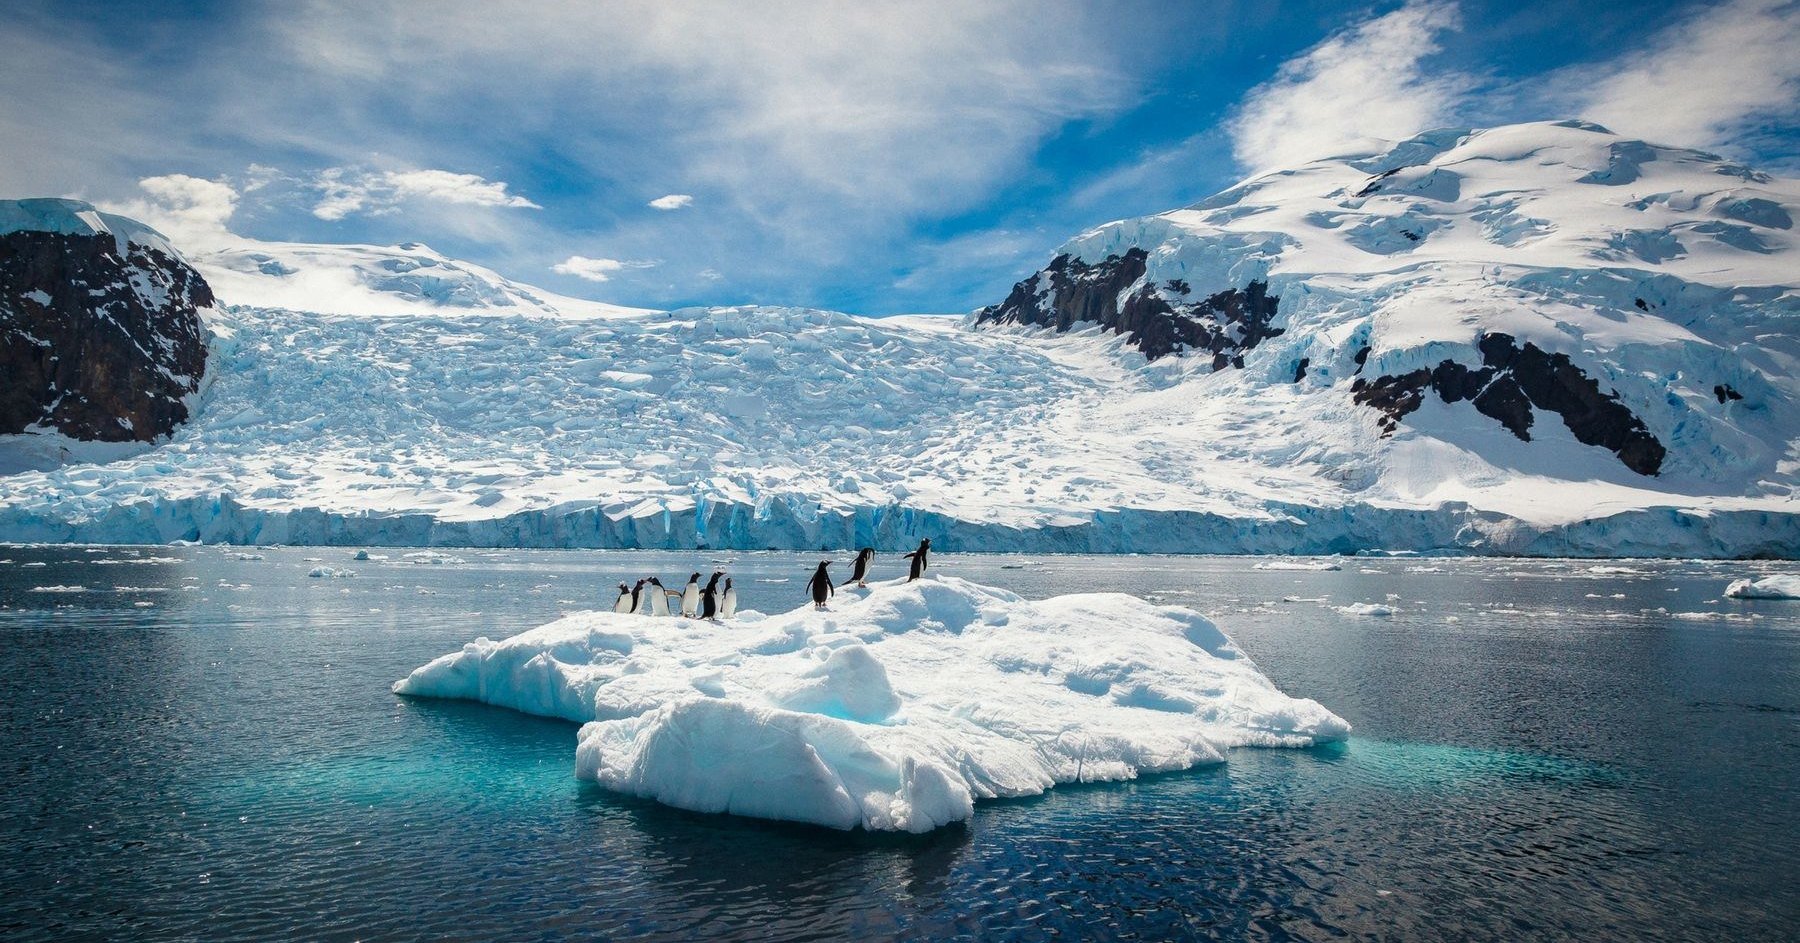 Обнаружен источник тепла под Антарктидой: лёд тает изнутри